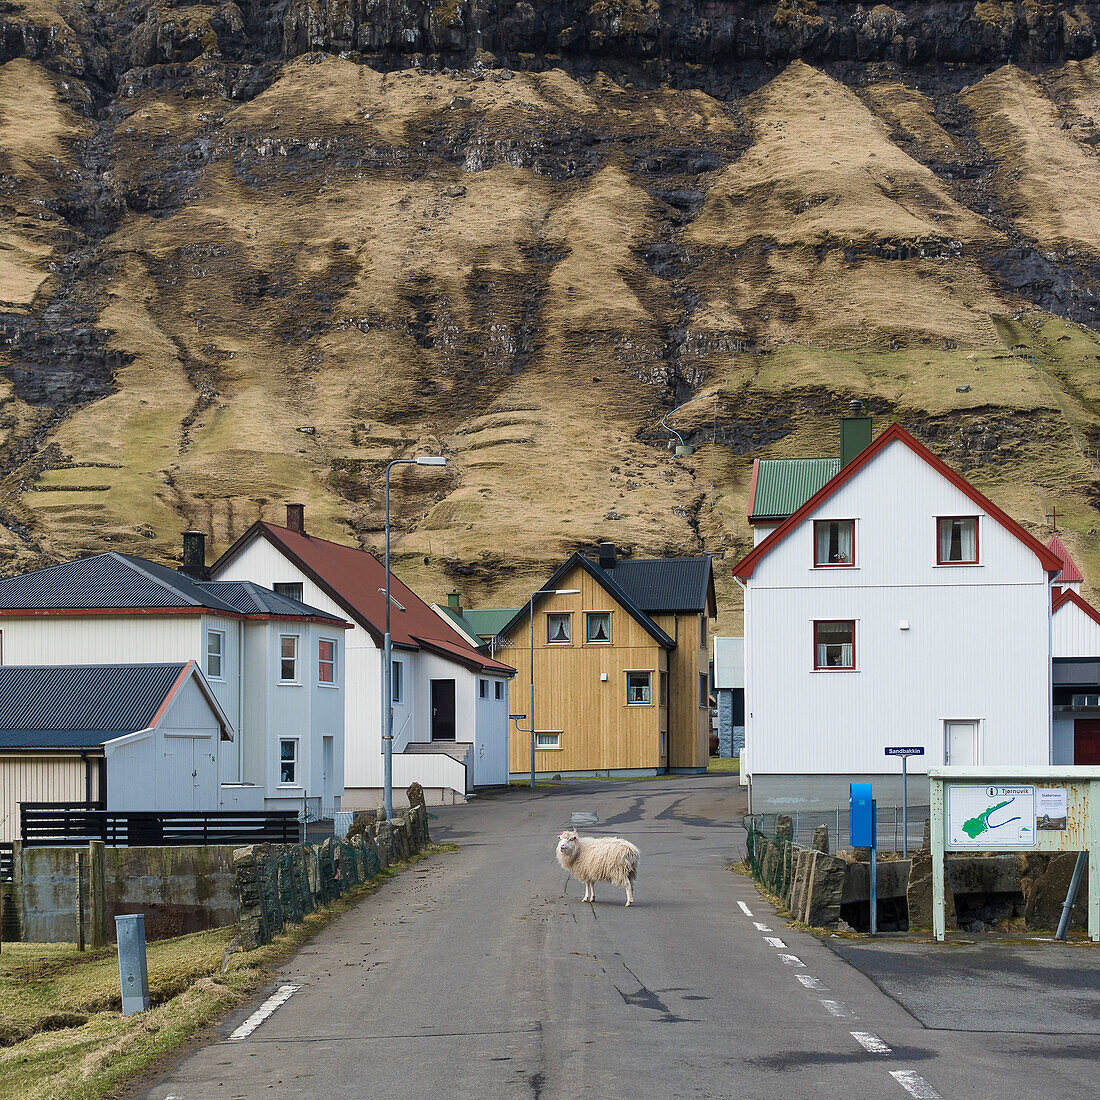 Schaf in den einsamen Strassen von Tjornuvik, Streymoy, Färöer Inseln, Dänemark